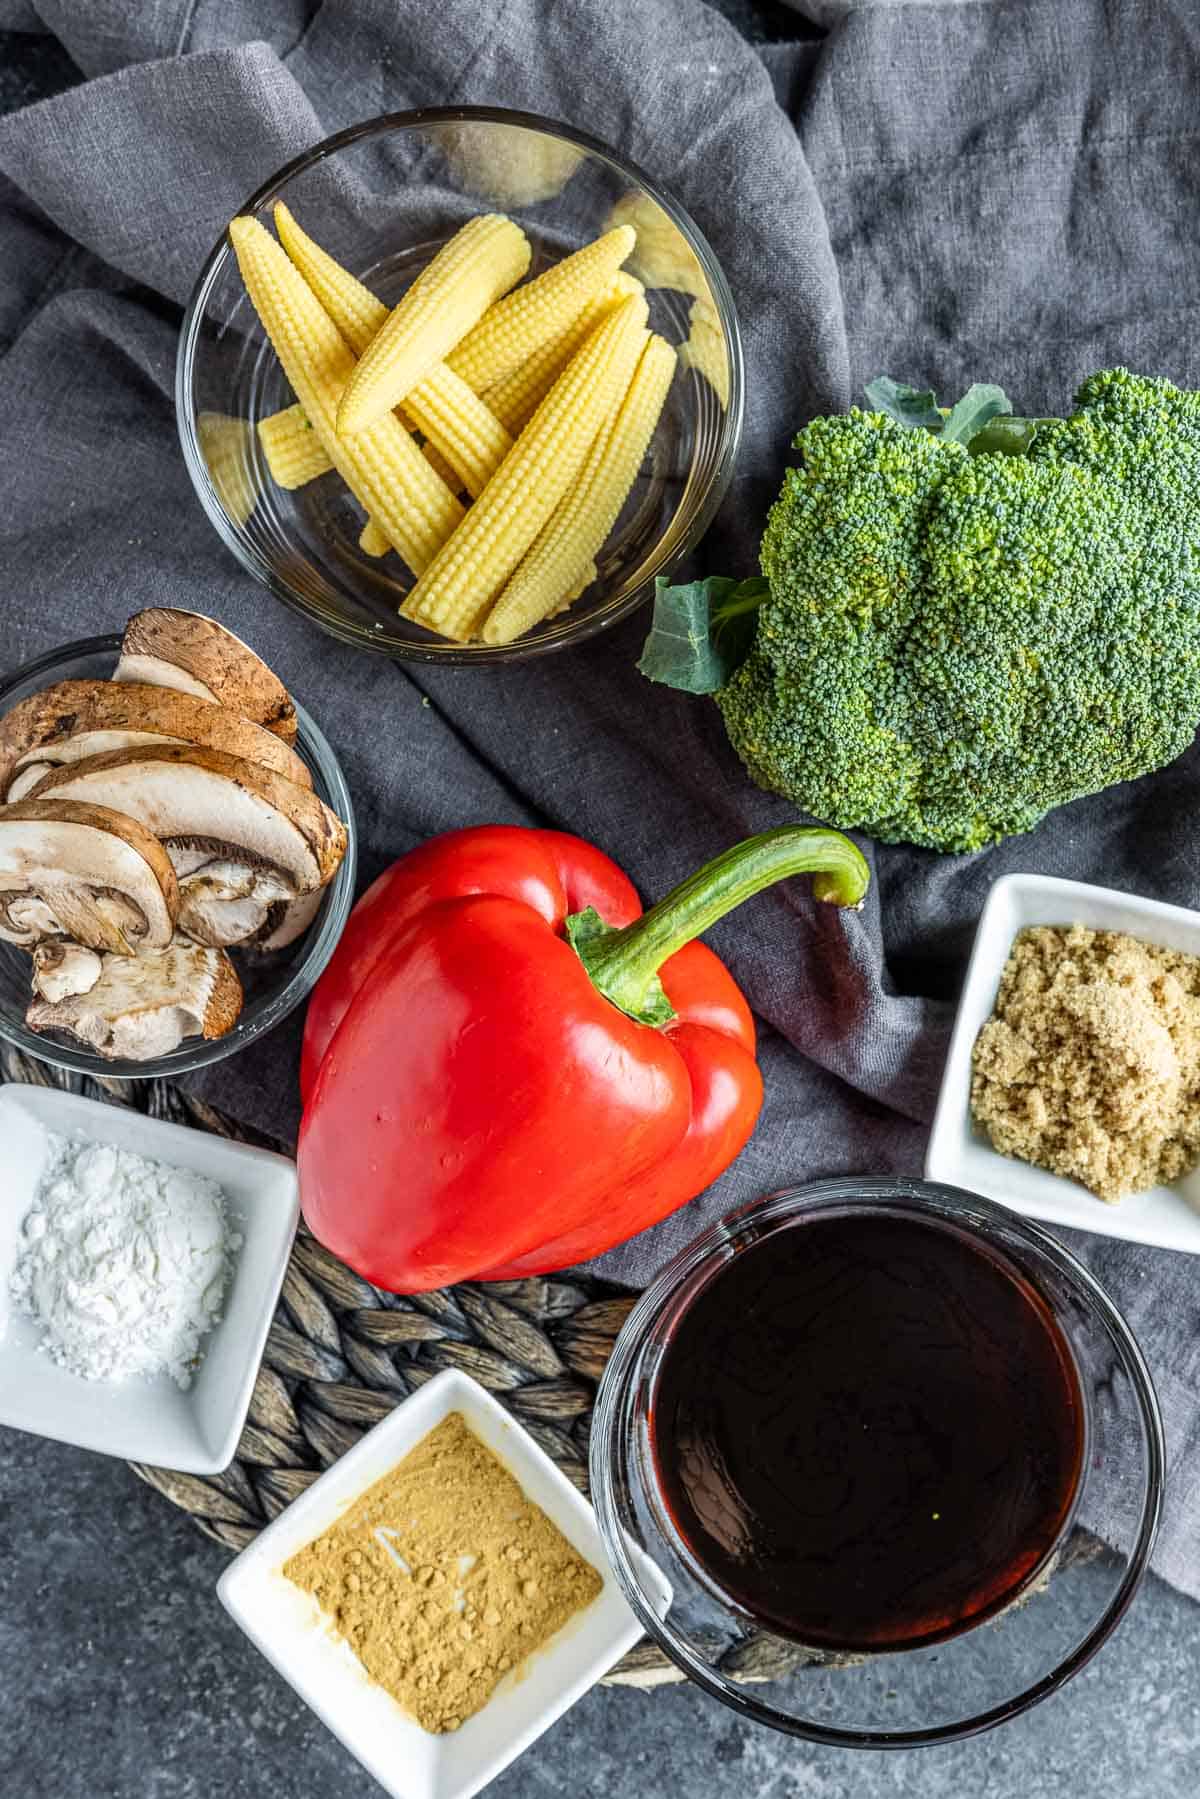 Vegetable Stir Fry ingredients